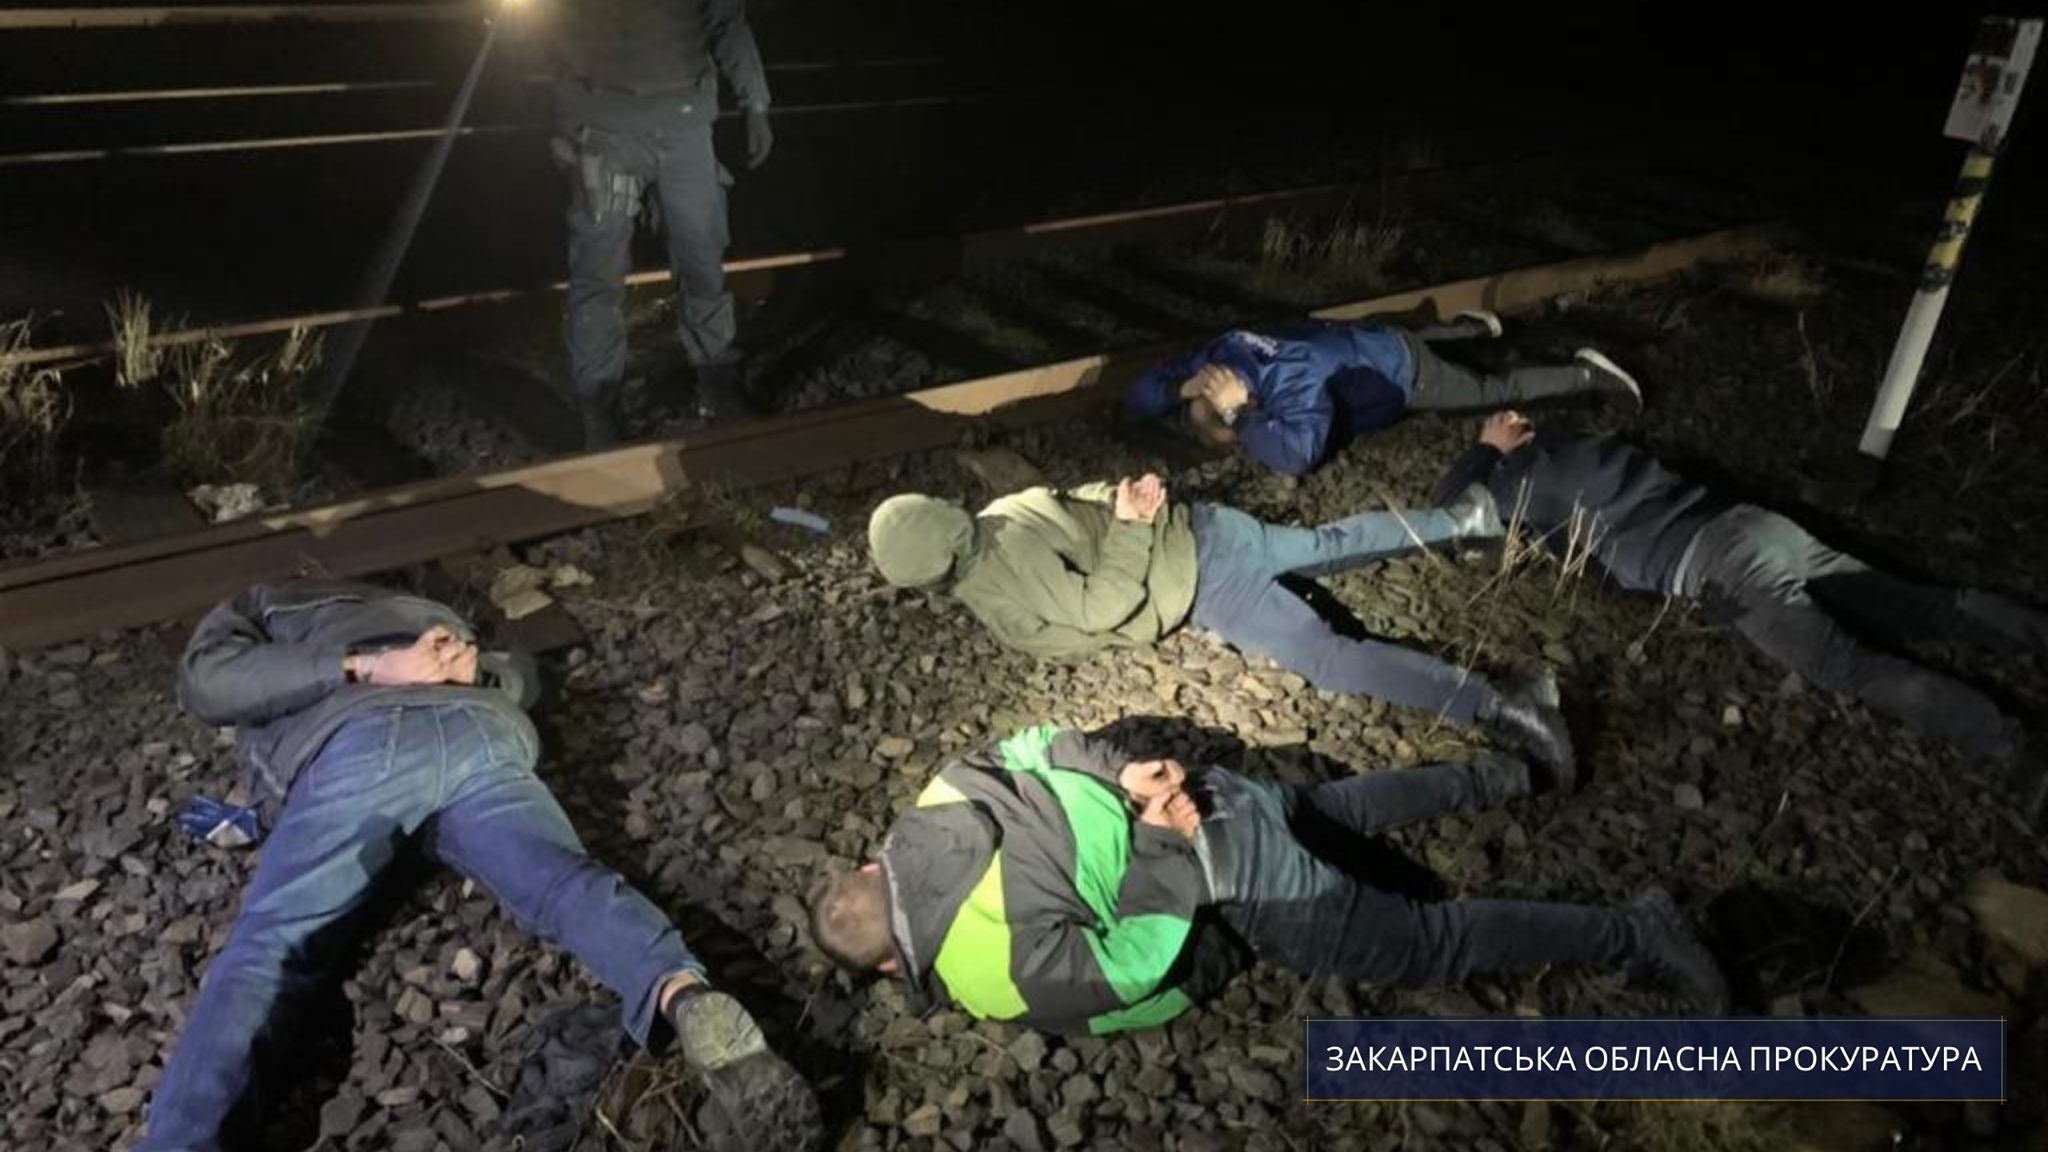 Працівників залізниці, підозрюваних у привласненні дизпалива на Закарпатті, взято під варту із визначенням застави 